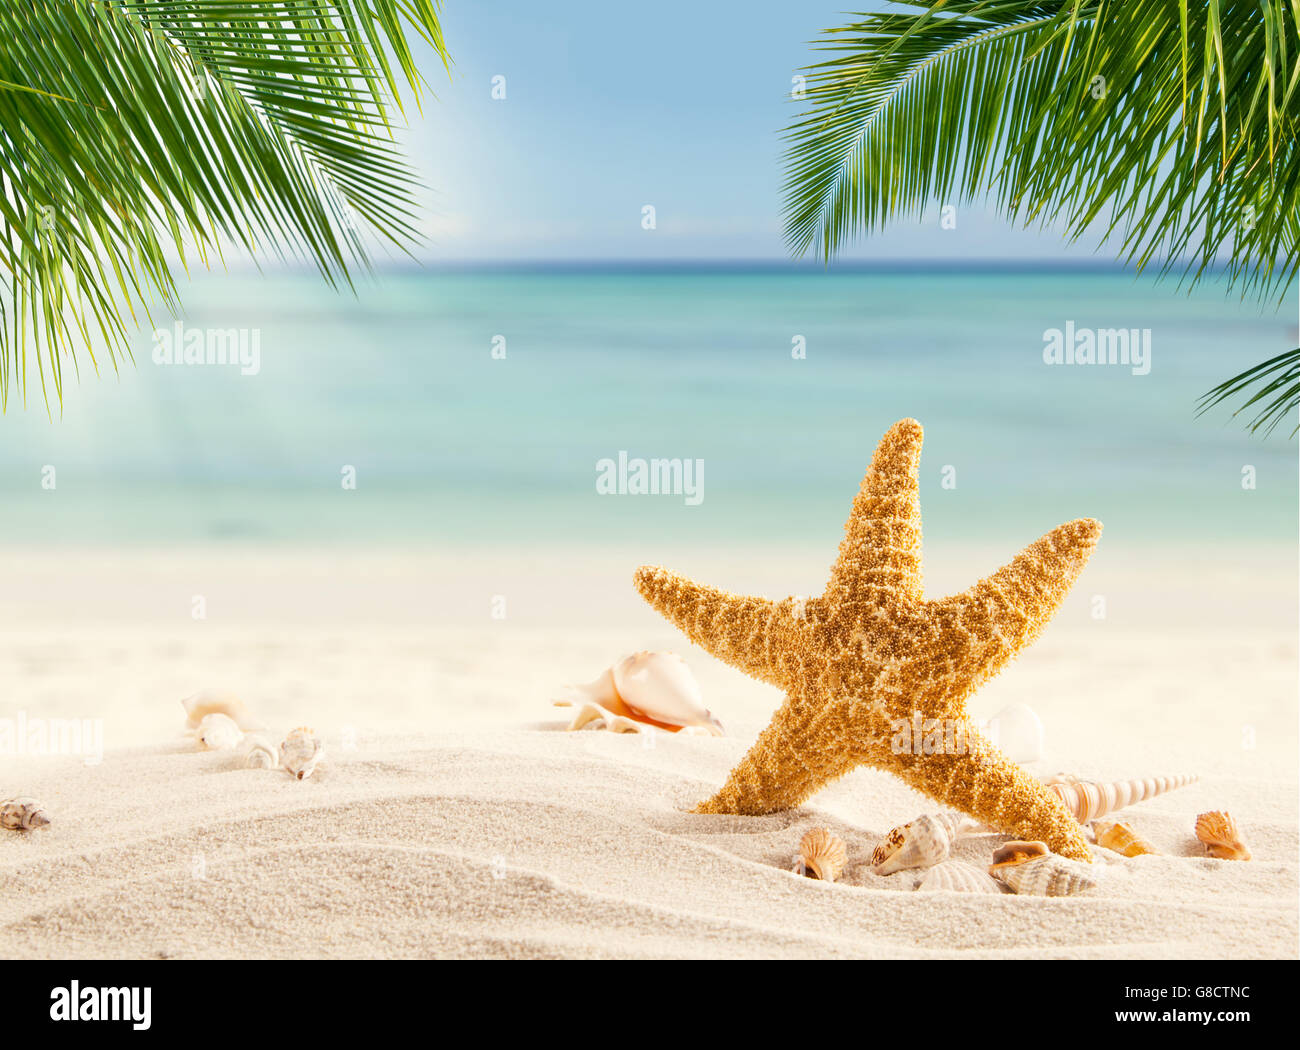 Tropischer Strand mit verschiedenen Muscheln im Sand, Exemplar für Text. Konzept der Erholung im Sommer Stockfoto